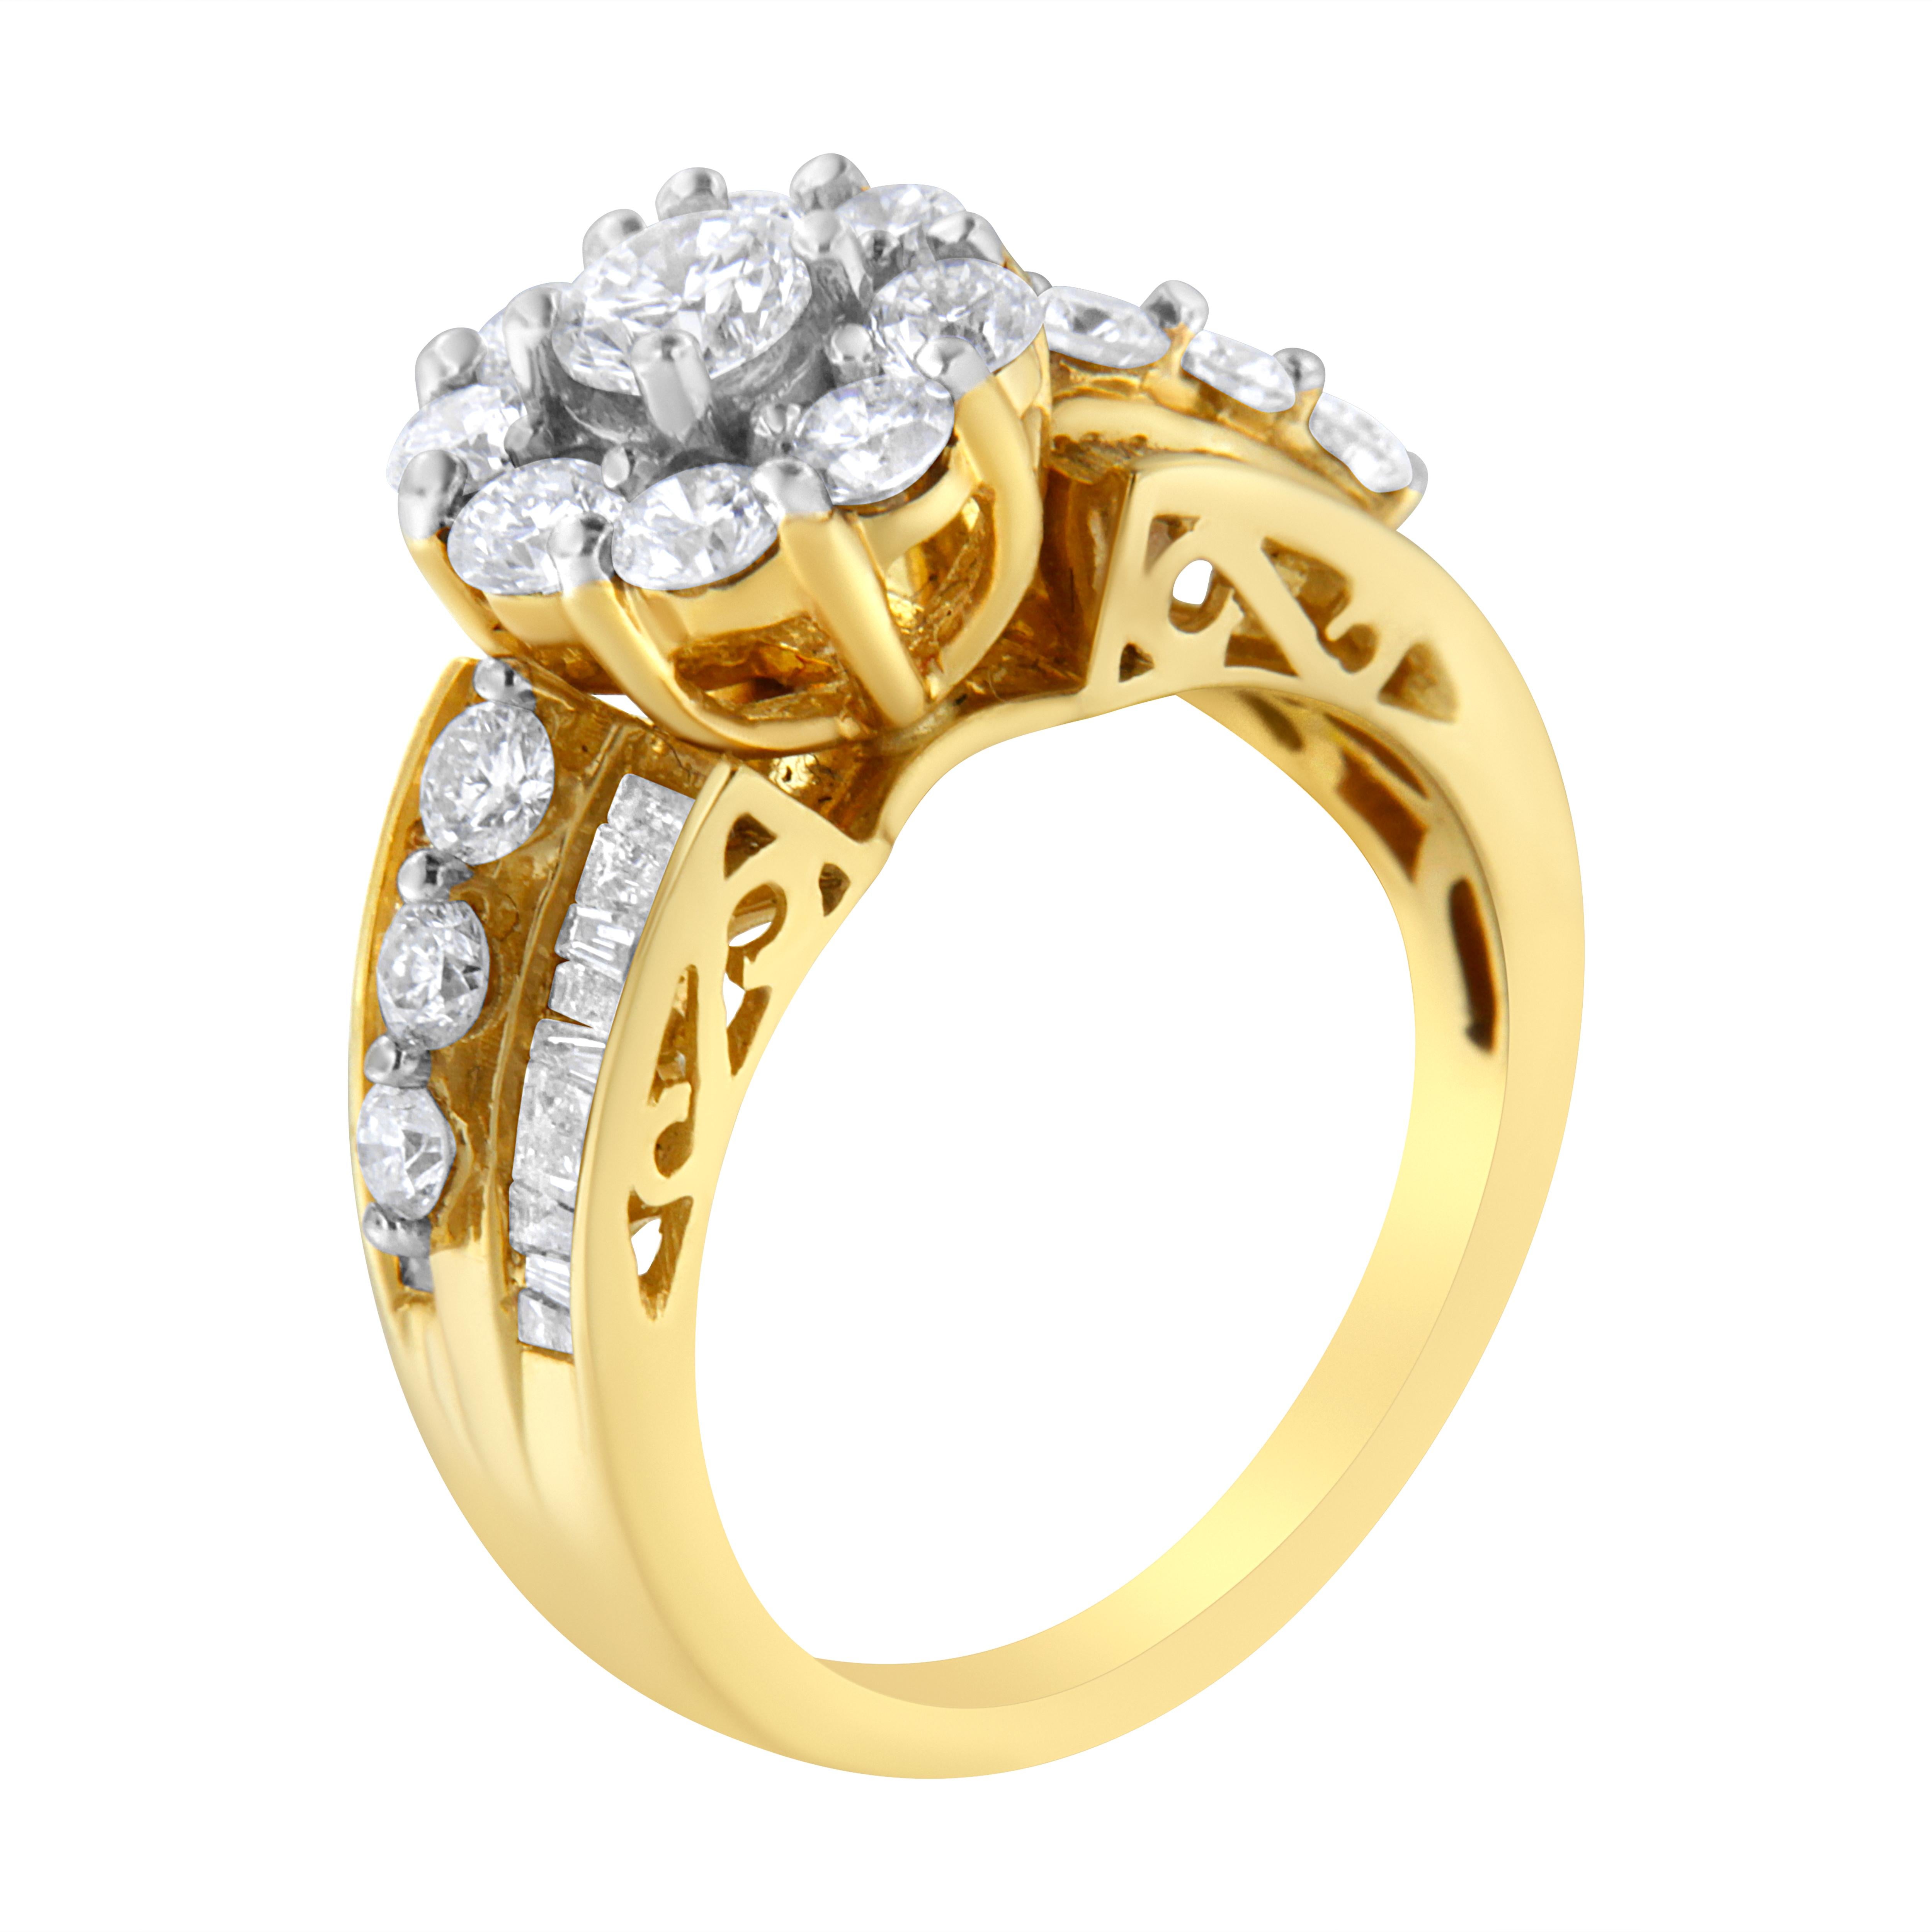 Sie werden sich in diesen Ring aus 14 Karat Gelbgold verlieben, der 2ct TDW an runden und Baguette-Diamanten aufweist. Ein rund geschliffener Diamant bildet ein floral inspiriertes Design in der Mitte. Glitzernde runde Diamanten verlaufen auf beiden